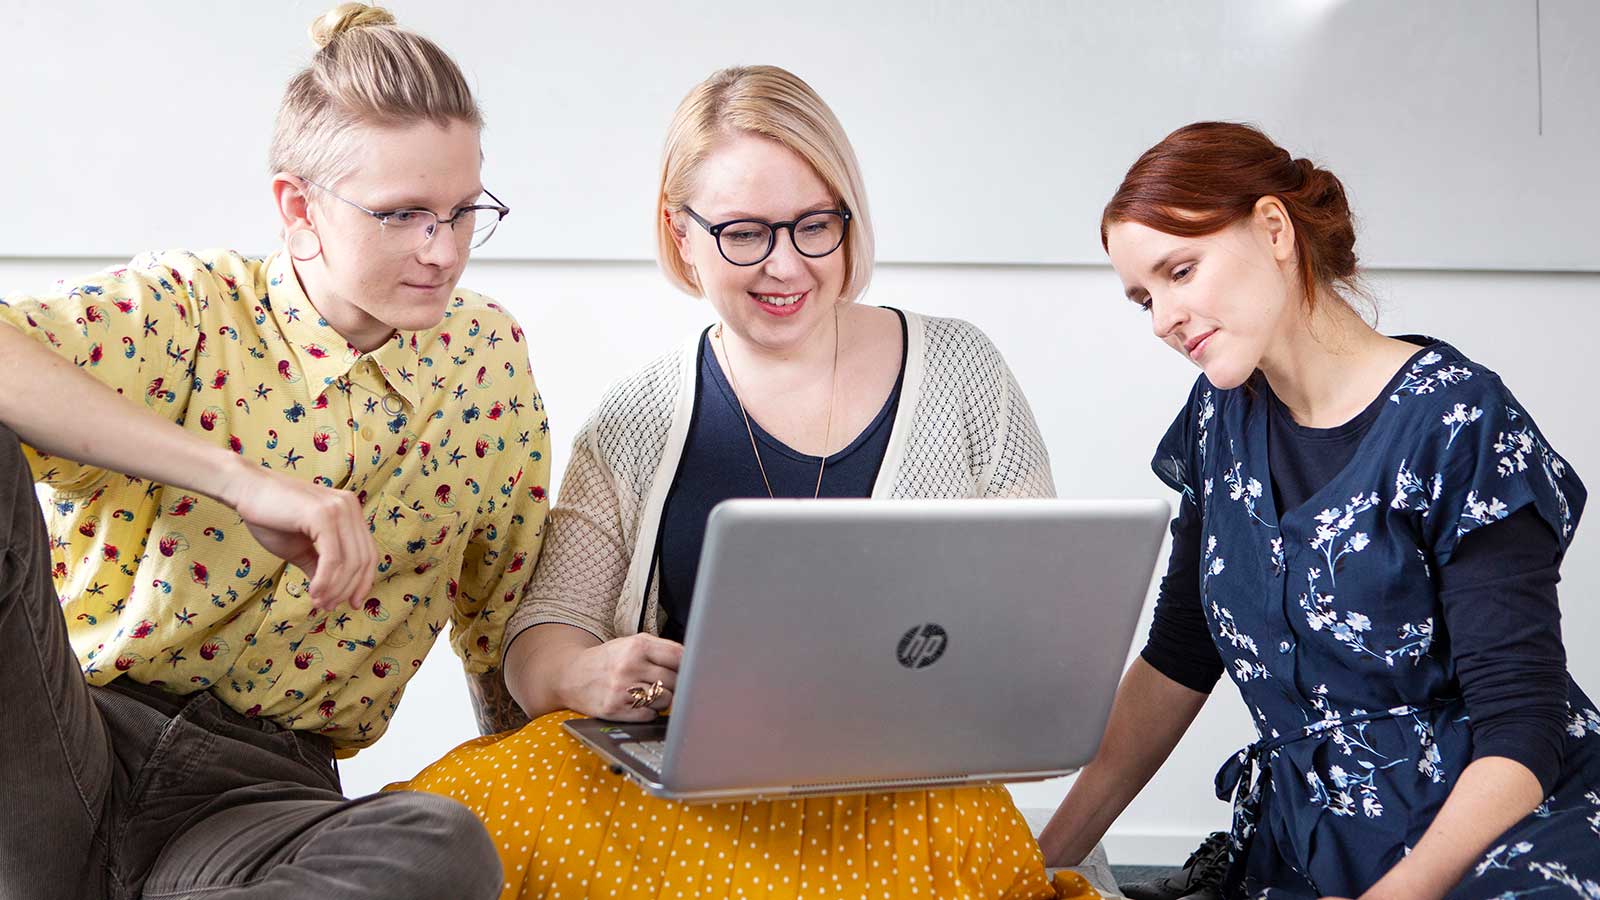 Kolme opiskelijaa kannettavan tietokoneen äärellä.